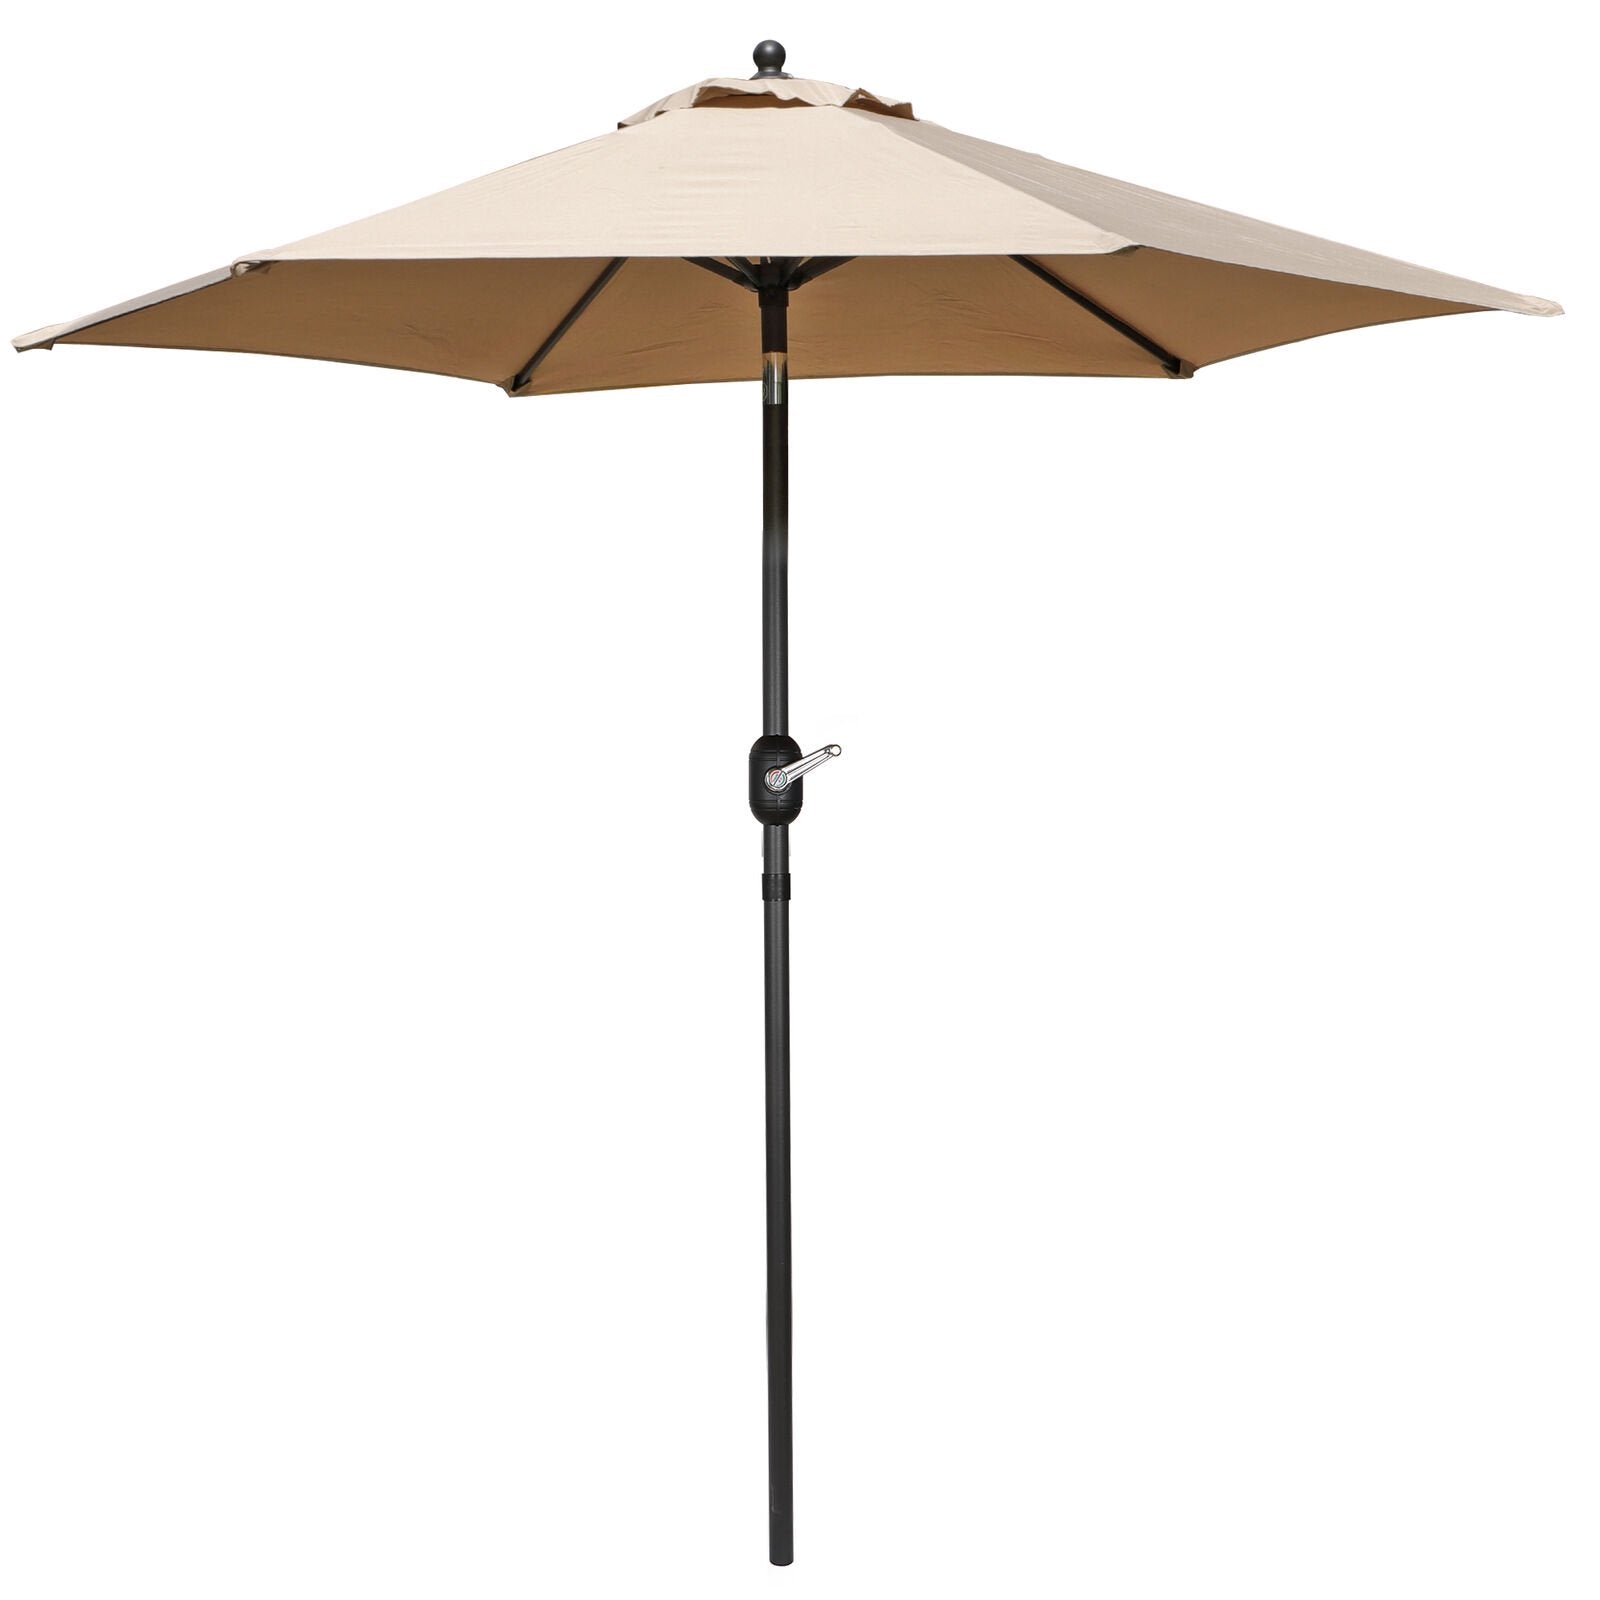 7.5ft Outdoor Patio Umbrella for Inground Pool Balcony